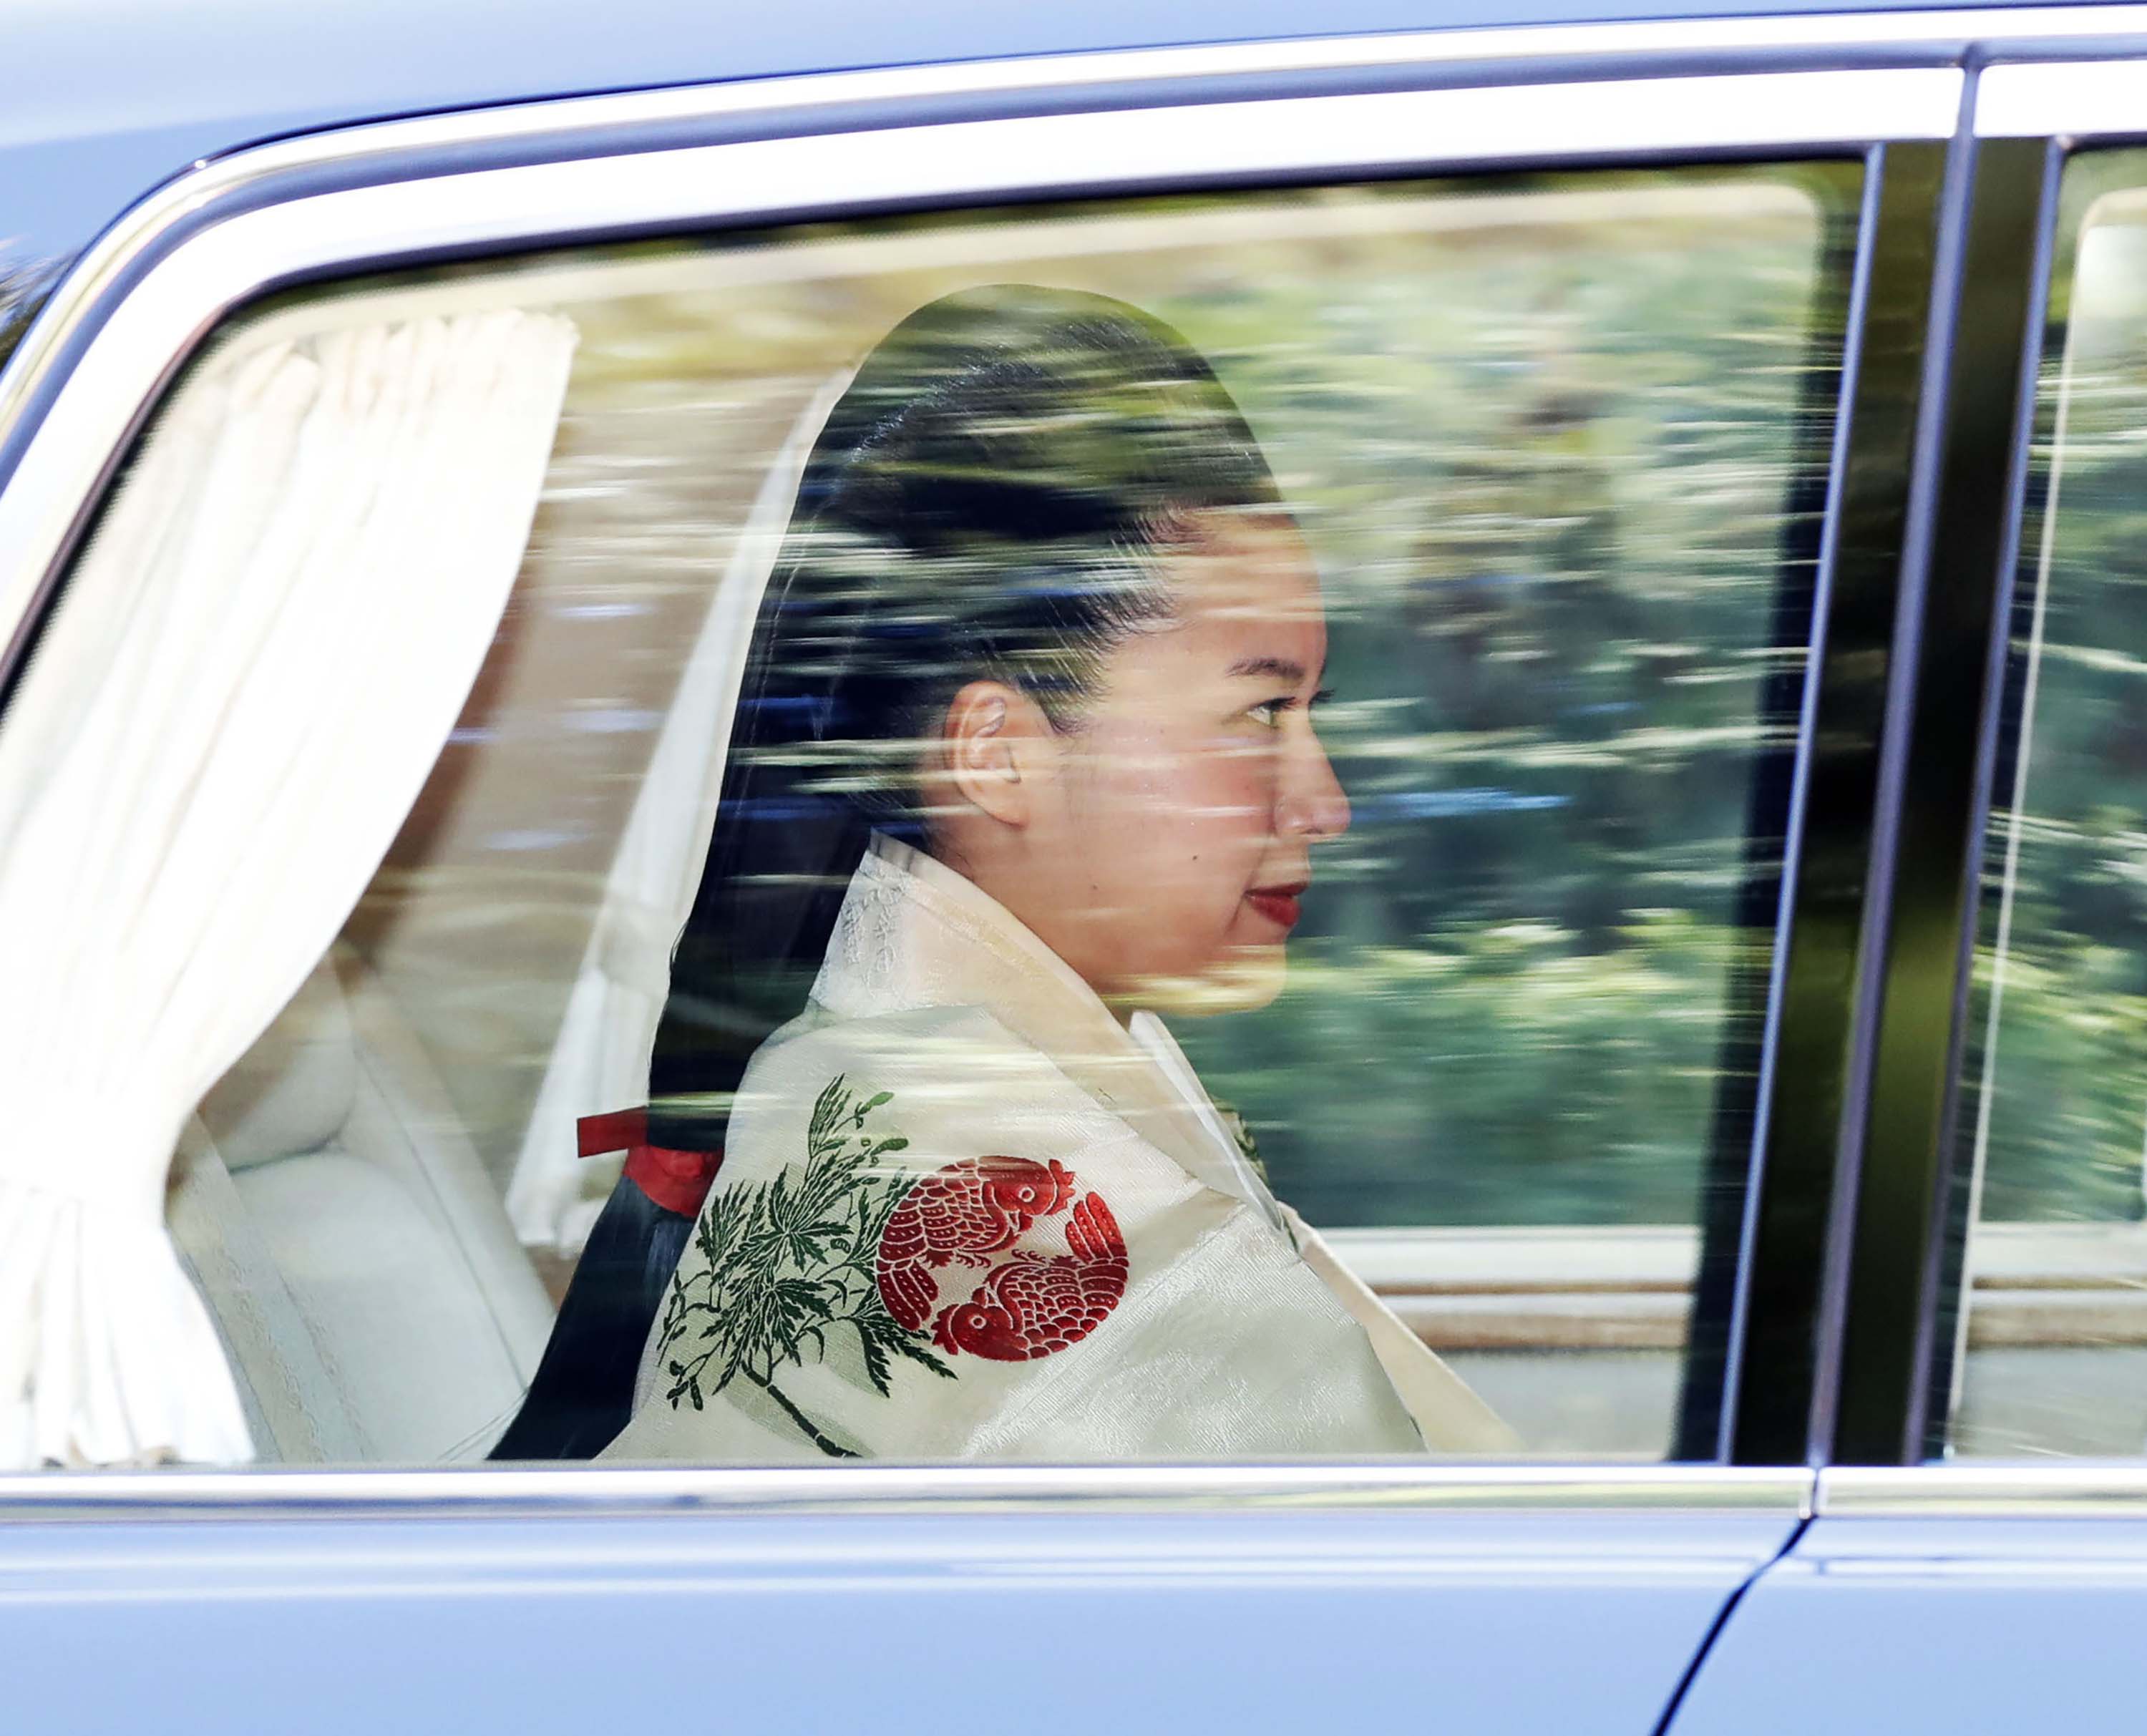 Japan's Princess Ayako renounces her royal status as she marries